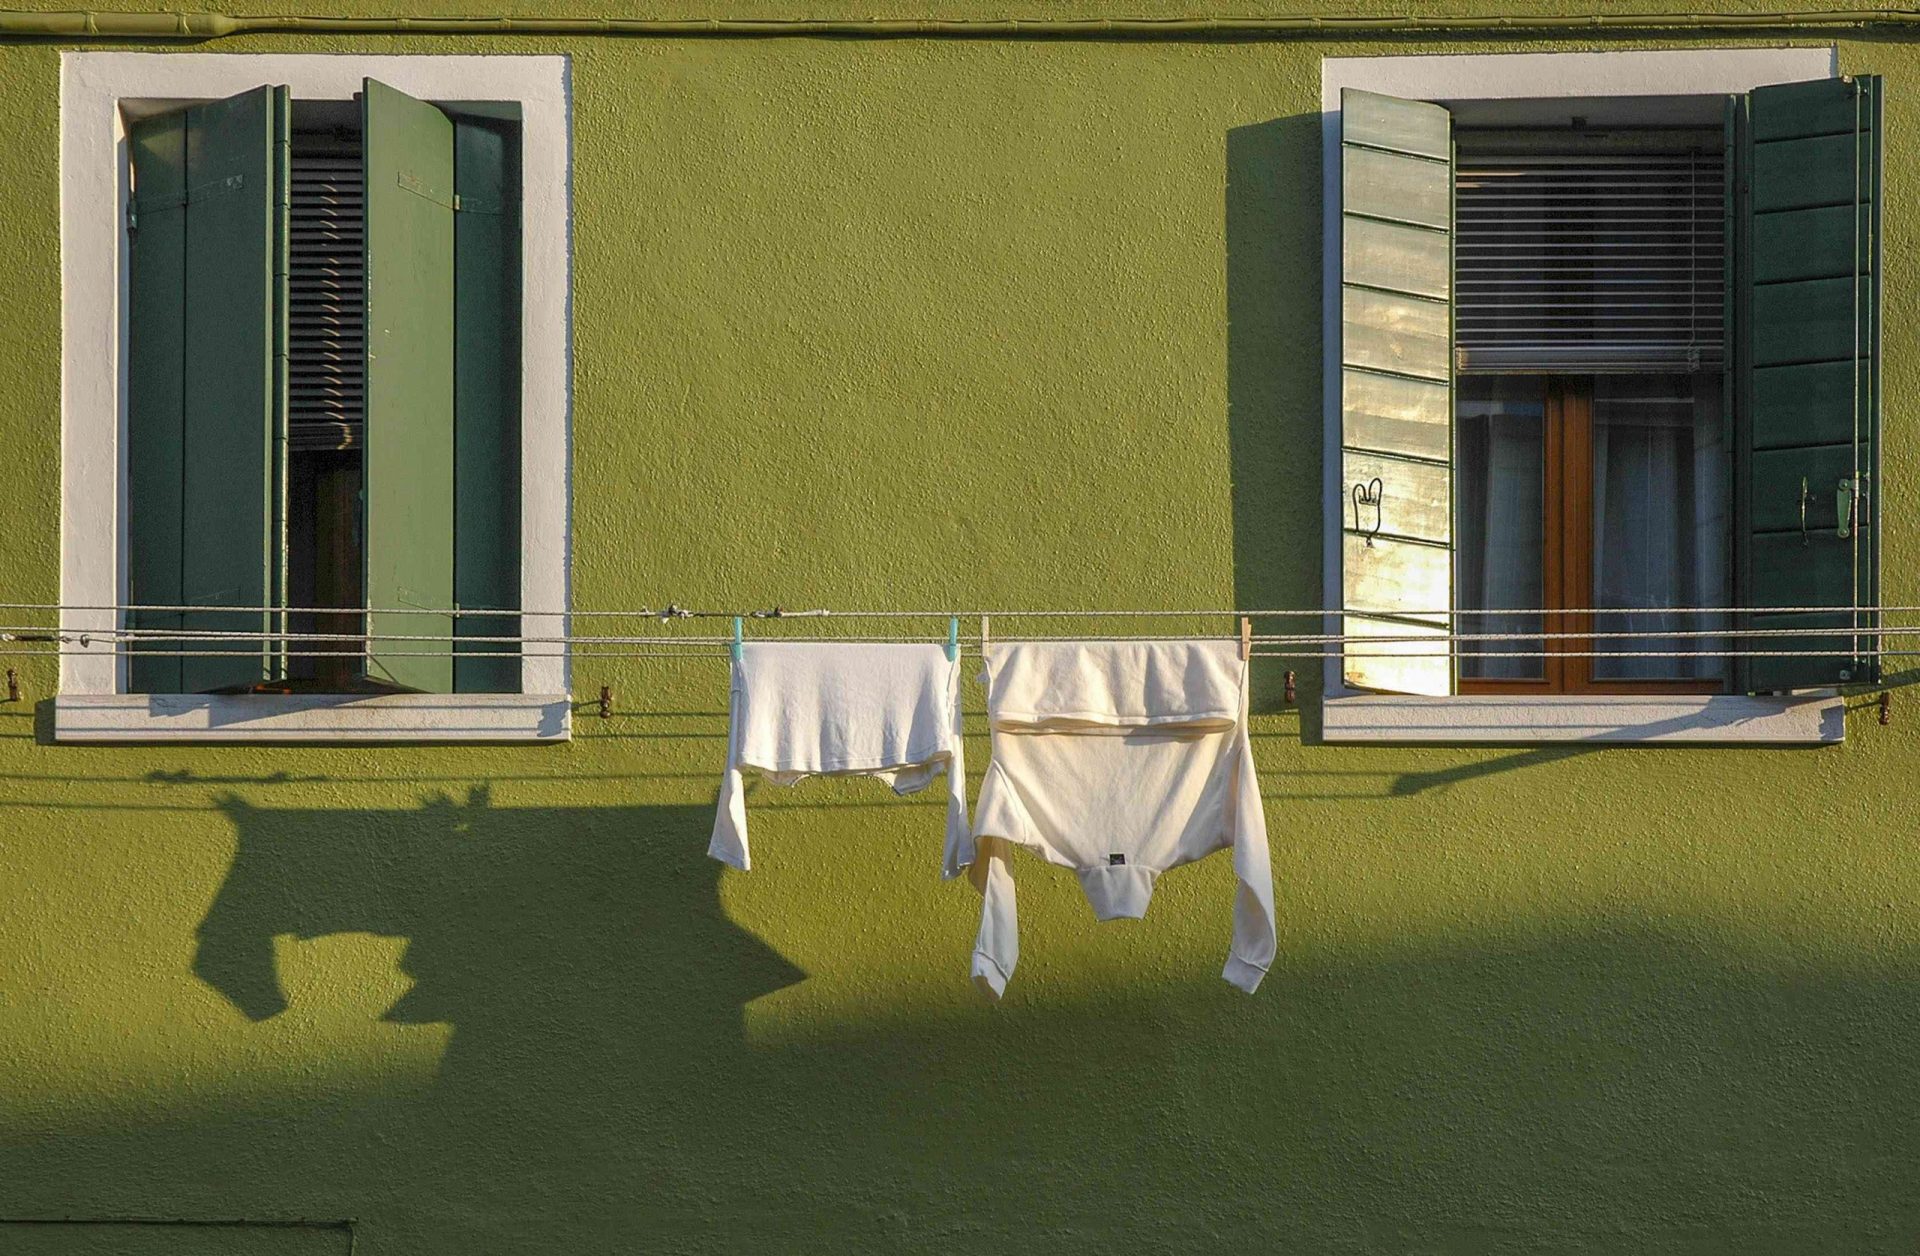 La ropa se seca al sol en un tendedero colgado entre dos ventanas